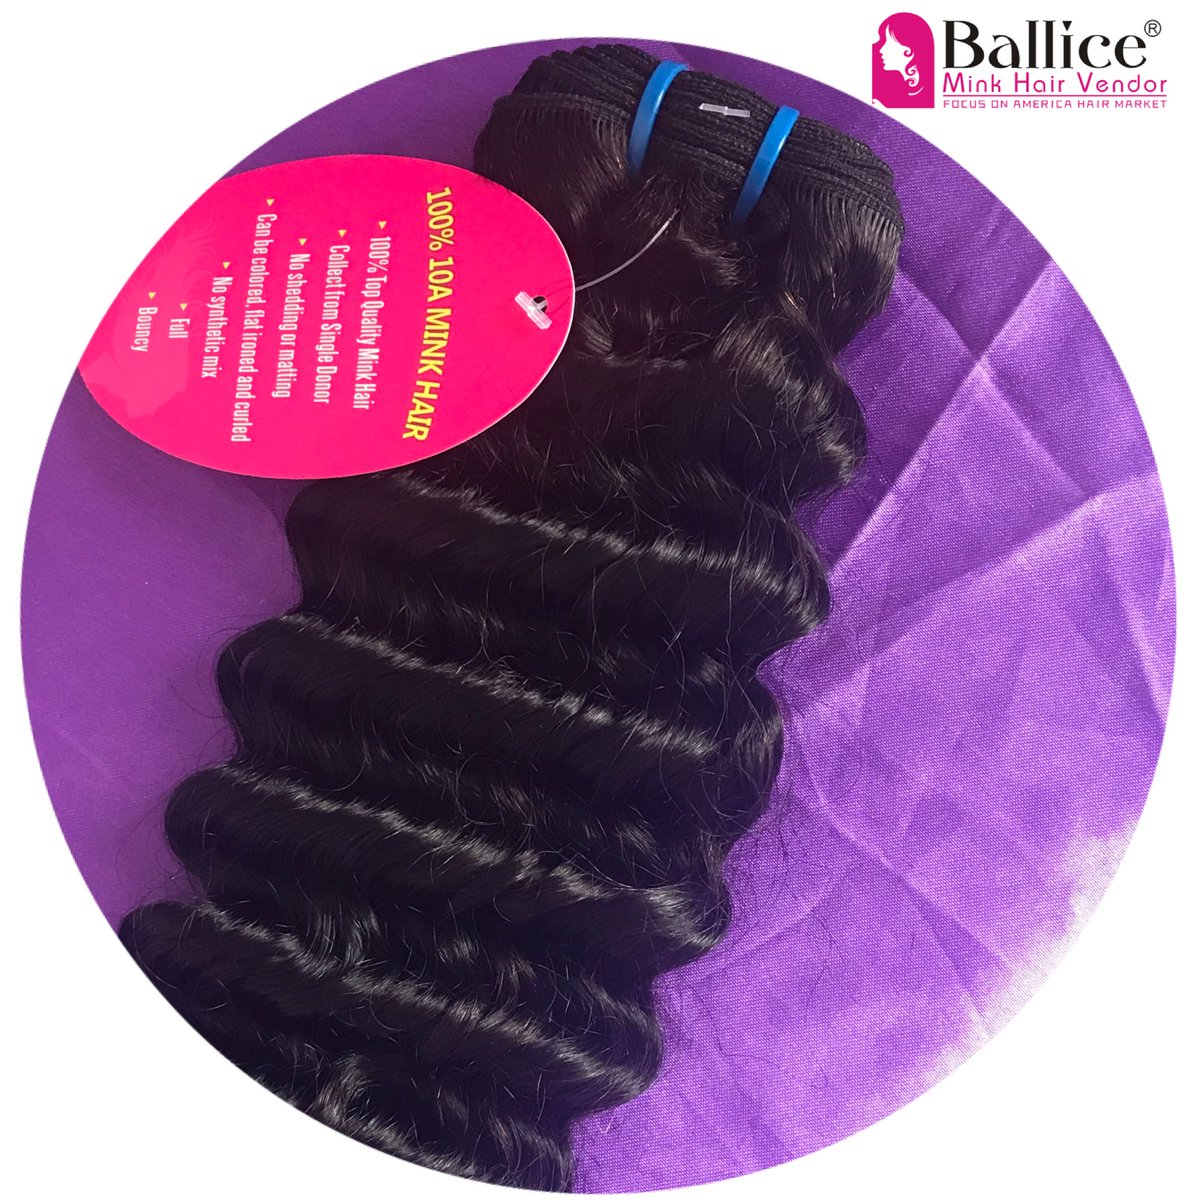 Wholesale 10A mink brazilian deep wave hair.
Phone/WhatsApp:+86-15639287152
Email: info@ballicevirginhairl.com
Ballice Hair Web: ballicevirginhair.com
#virginhairextensions #VirginHair #HairforSale #SaleHair #brazilianhair #bodywave #minkhair #miinkbrazilian